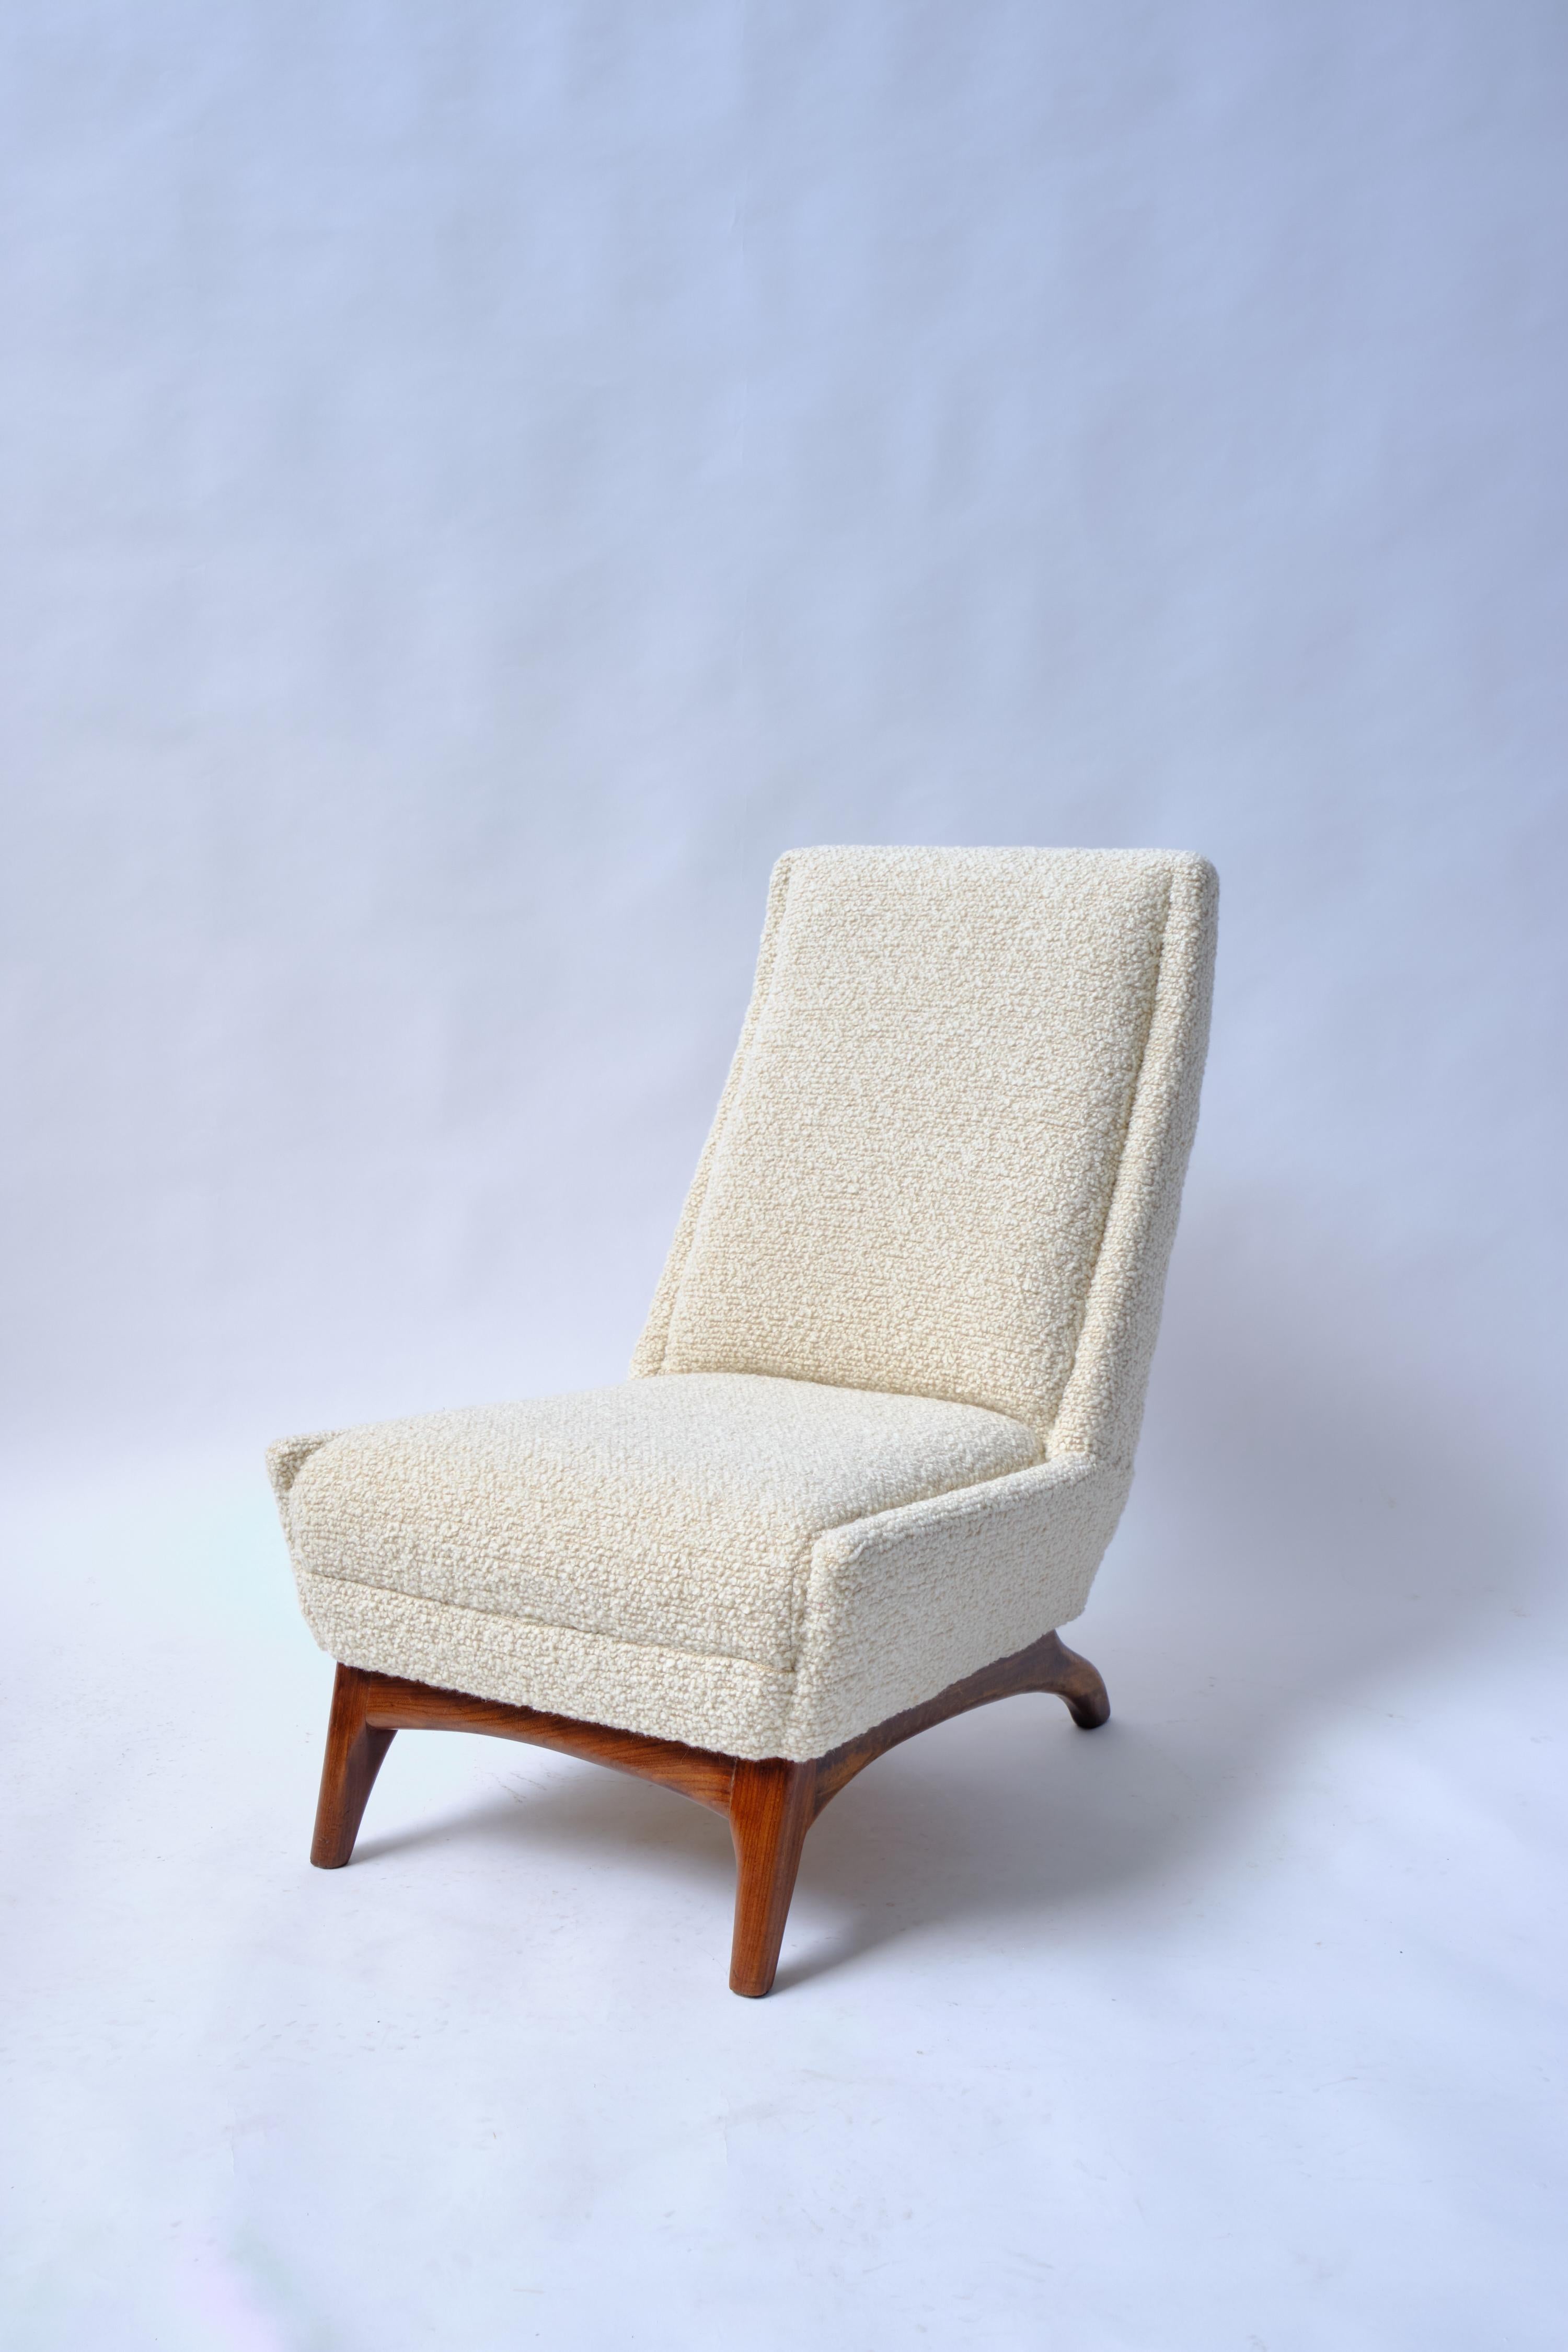 Midcentury Slipper Stuhl

Vom Deco inspirierter Slipper Chair mit dem allgegenwärtigen niedrigen Sitz und der hohen Rückenlehne. Pantoffelstühle wurden ursprünglich im 18. Jahrhundert hergestellt, um die Füße anzuziehen, aber diese Versionen aus dem